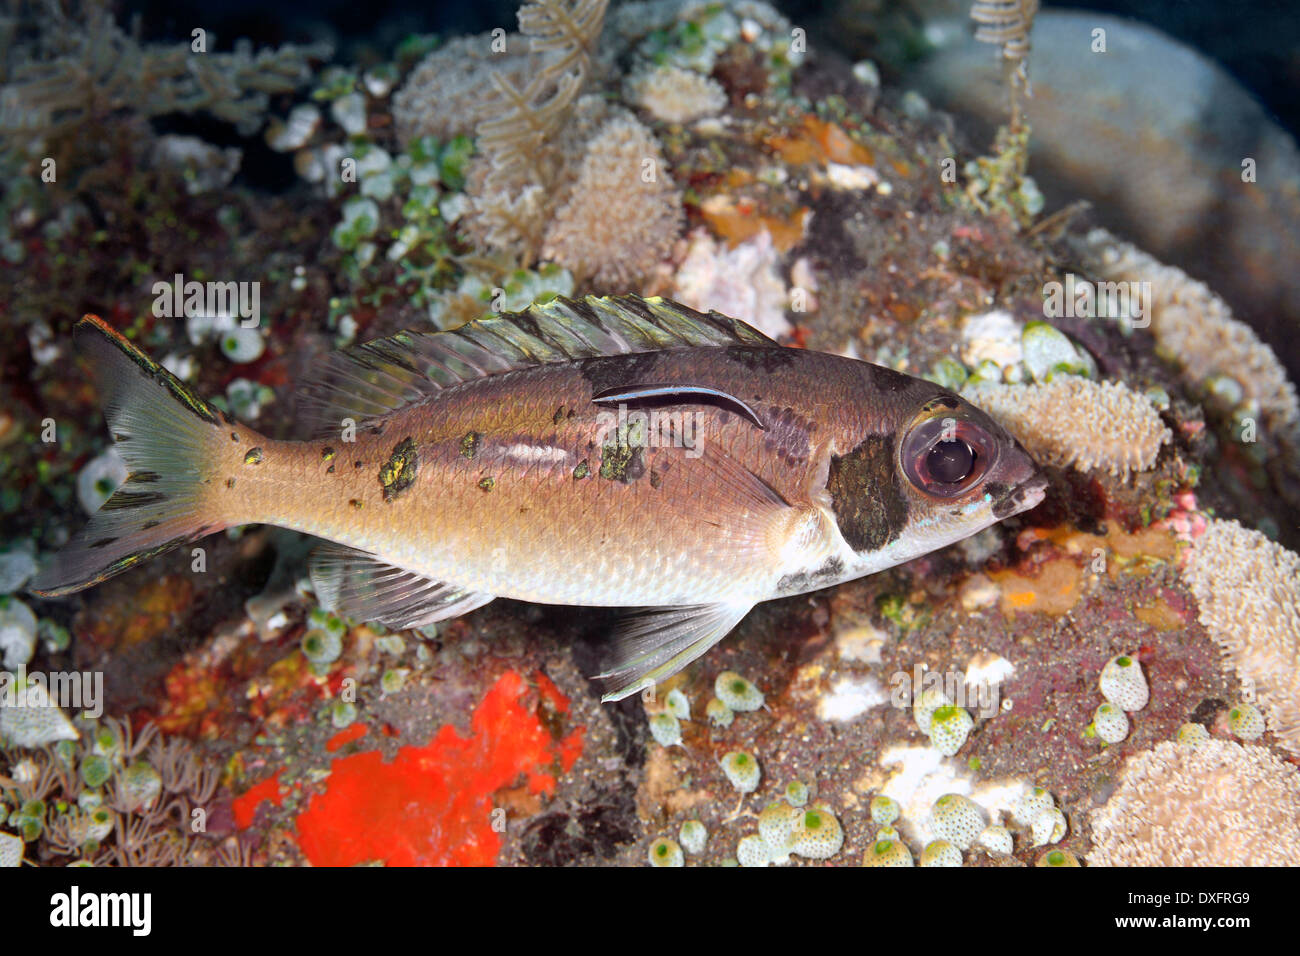 Los espáridos, Coral Pearl-Streaked Scolopsis xenochrous. El pescado se ha cambiado de color para invitar a los servicios de un limpiador de Blue Streak peces. Labriodes dimidiatus Foto de stock